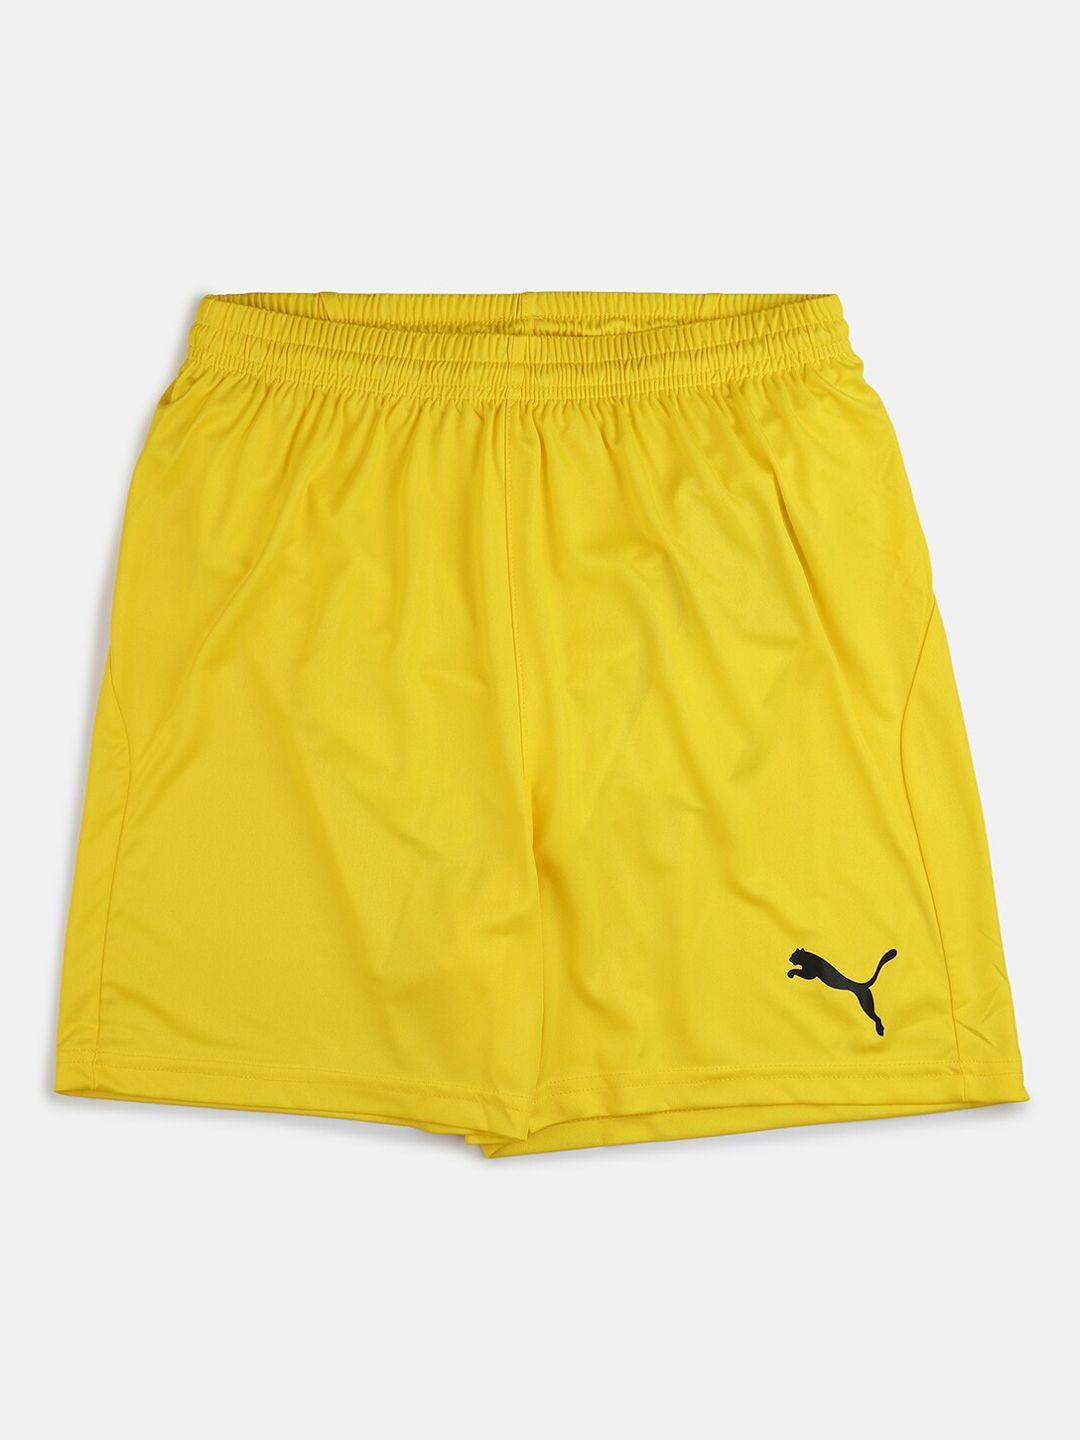 puma unisex kids yellow sports shorts